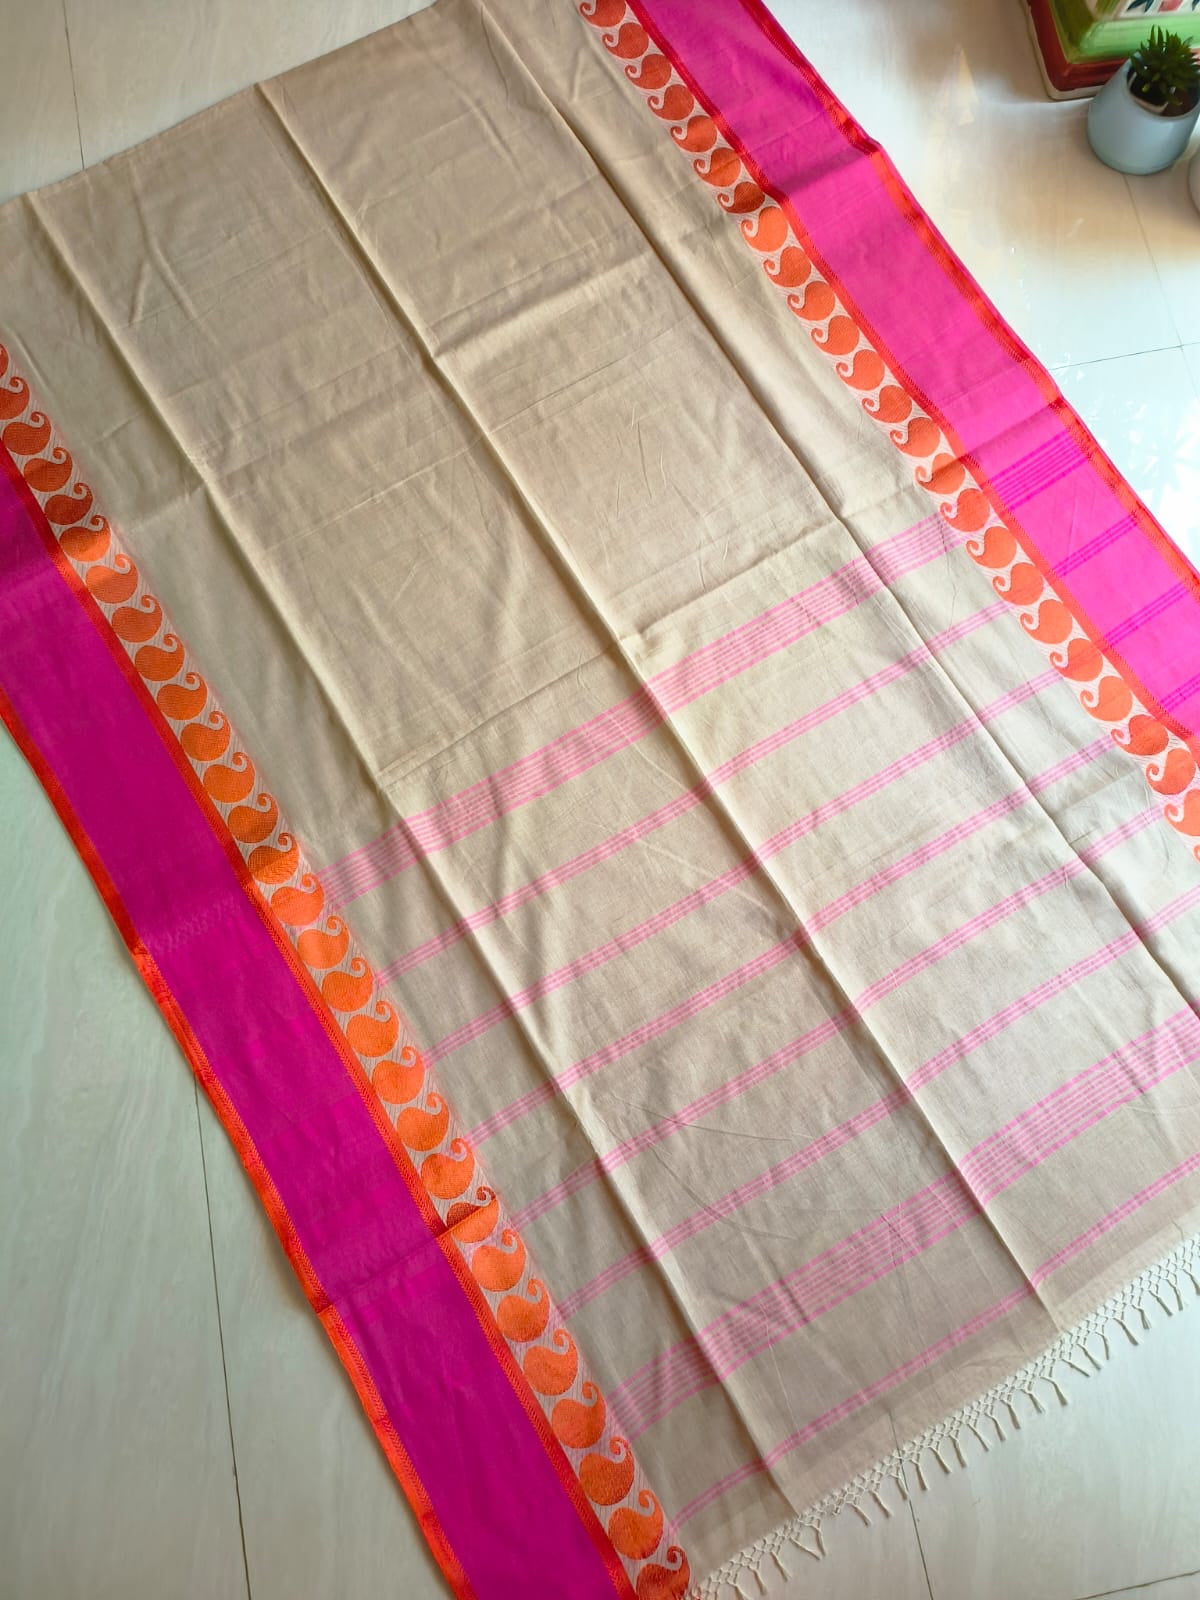 Mahii Bengal cotton handwoven saree